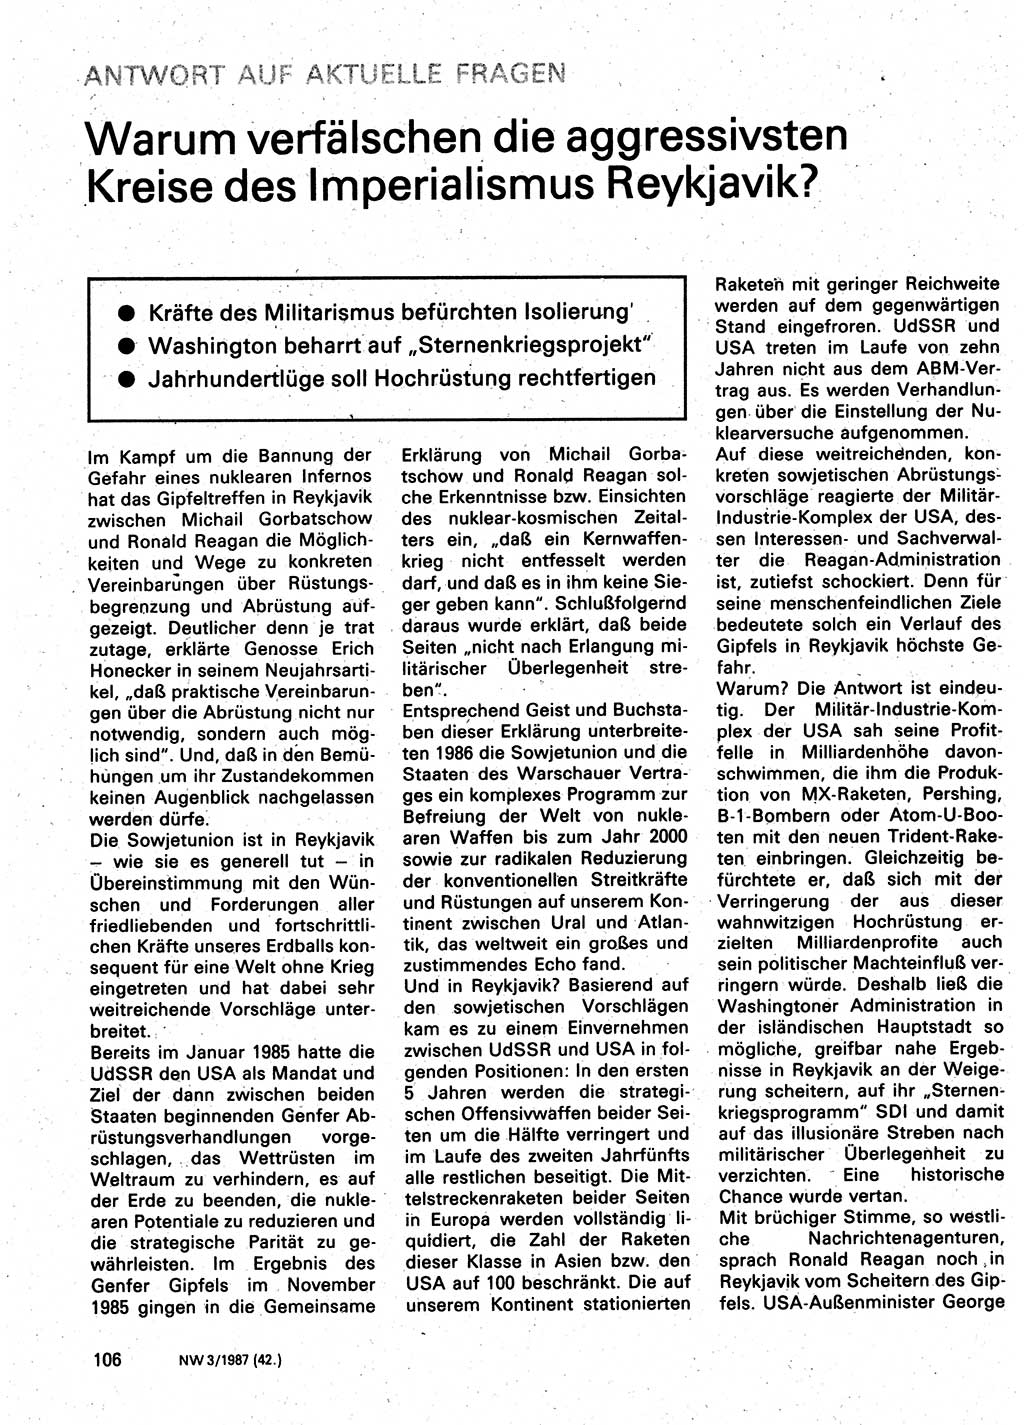 Neuer Weg (NW), Organ des Zentralkomitees (ZK) der SED (Sozialistische Einheitspartei Deutschlands) für Fragen des Parteilebens, 42. Jahrgang [Deutsche Demokratische Republik (DDR)] 1987, Seite 106 (NW ZK SED DDR 1987, S. 106)